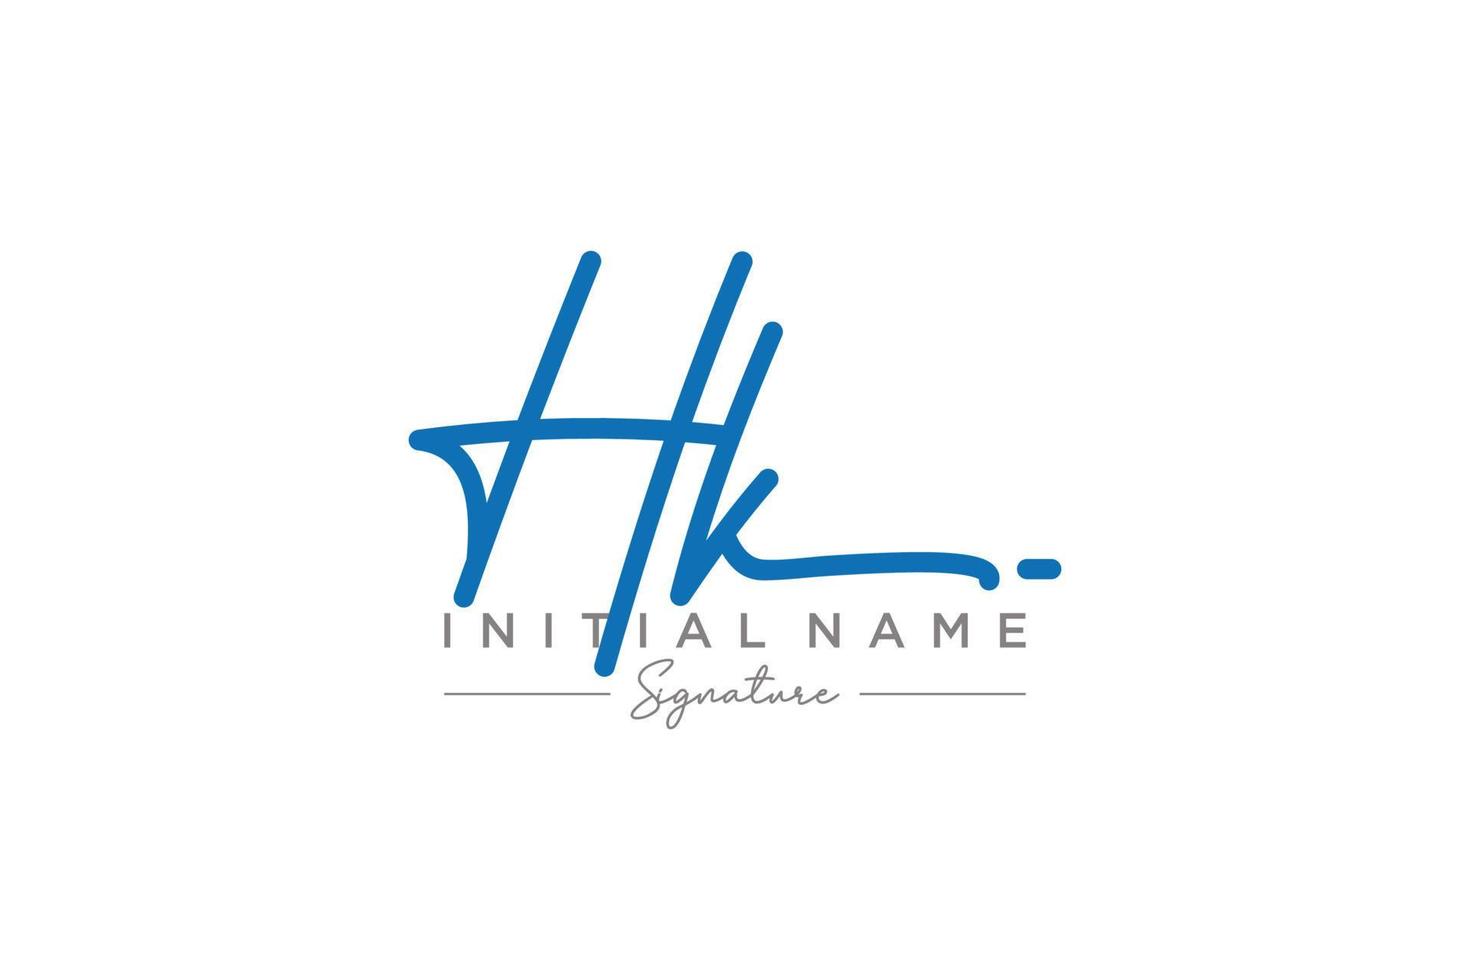 vector de plantilla de logotipo de firma hk inicial. ilustración de vector de letras de caligrafía dibujada a mano.